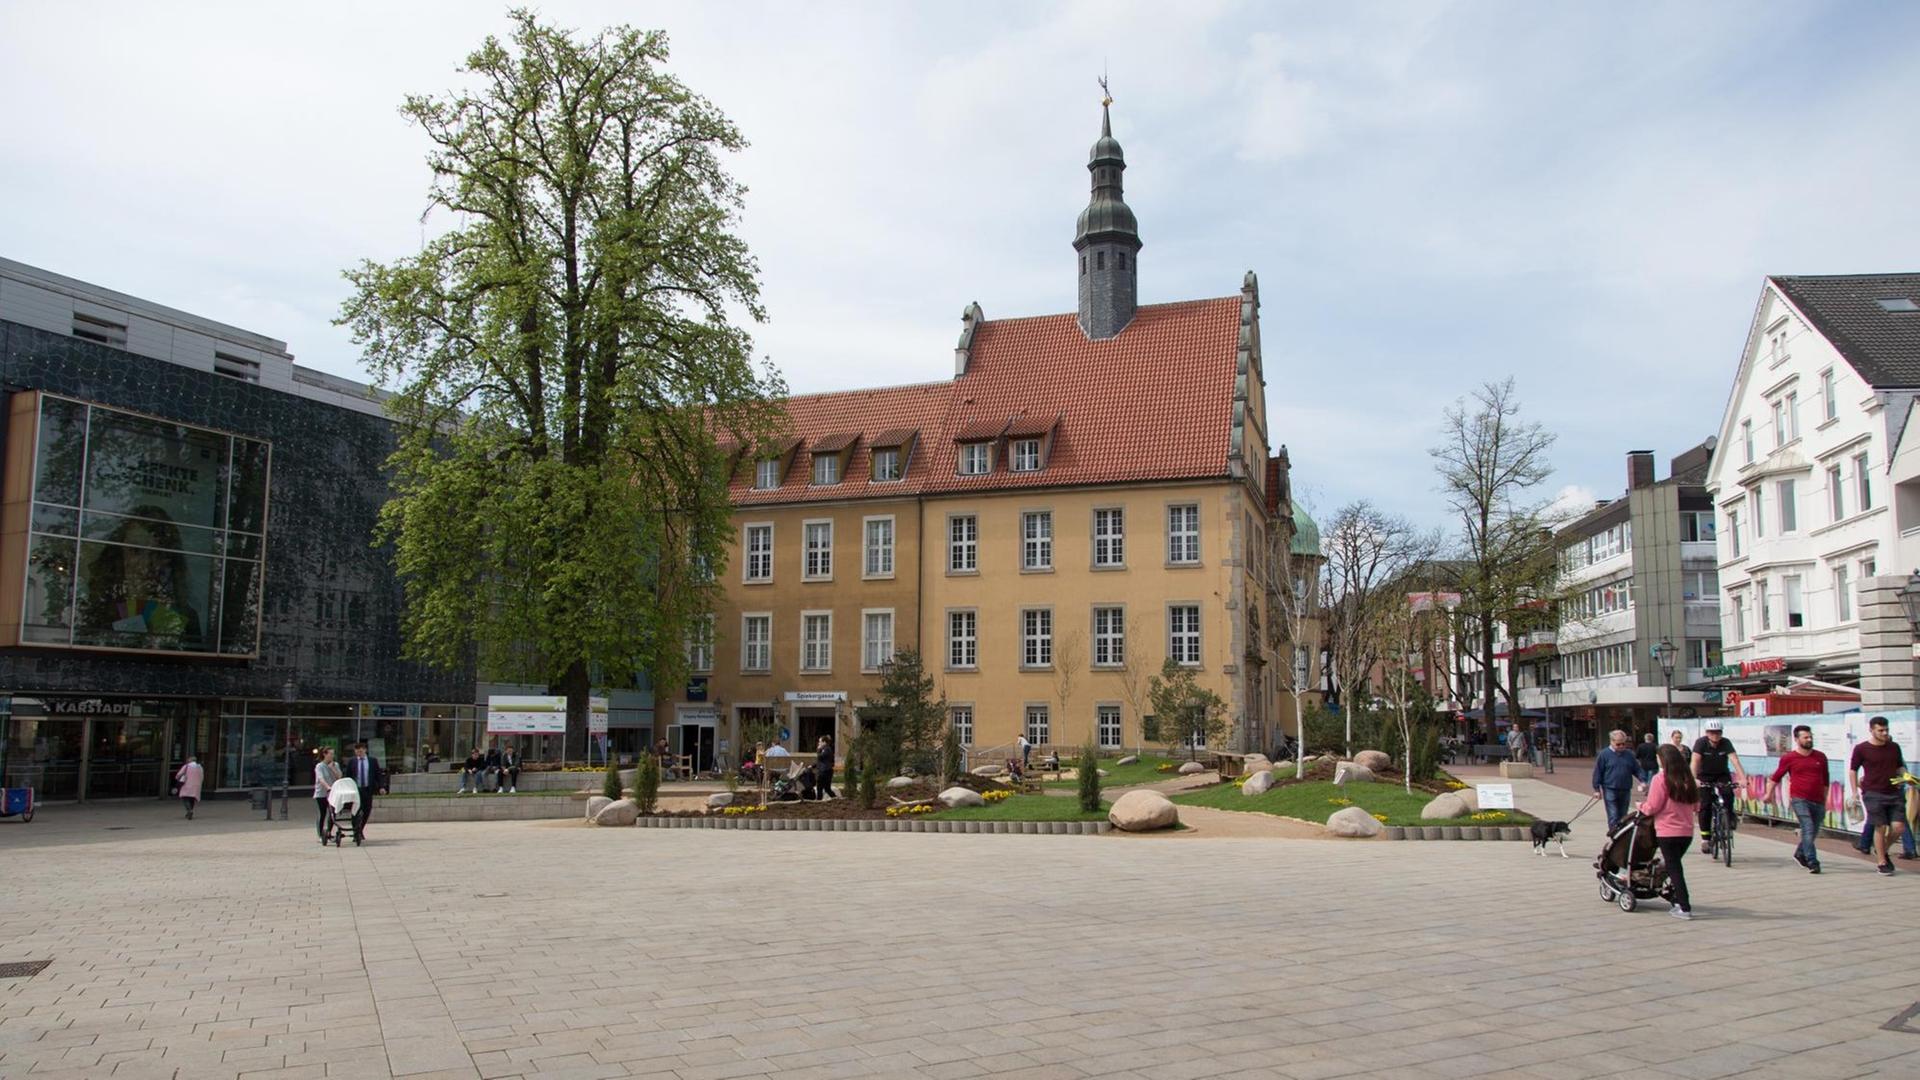 Blick auf einen städtischen Platz, im Hintergrund ein historisches Gebäude und ein Baum sowie einzelne Passanten